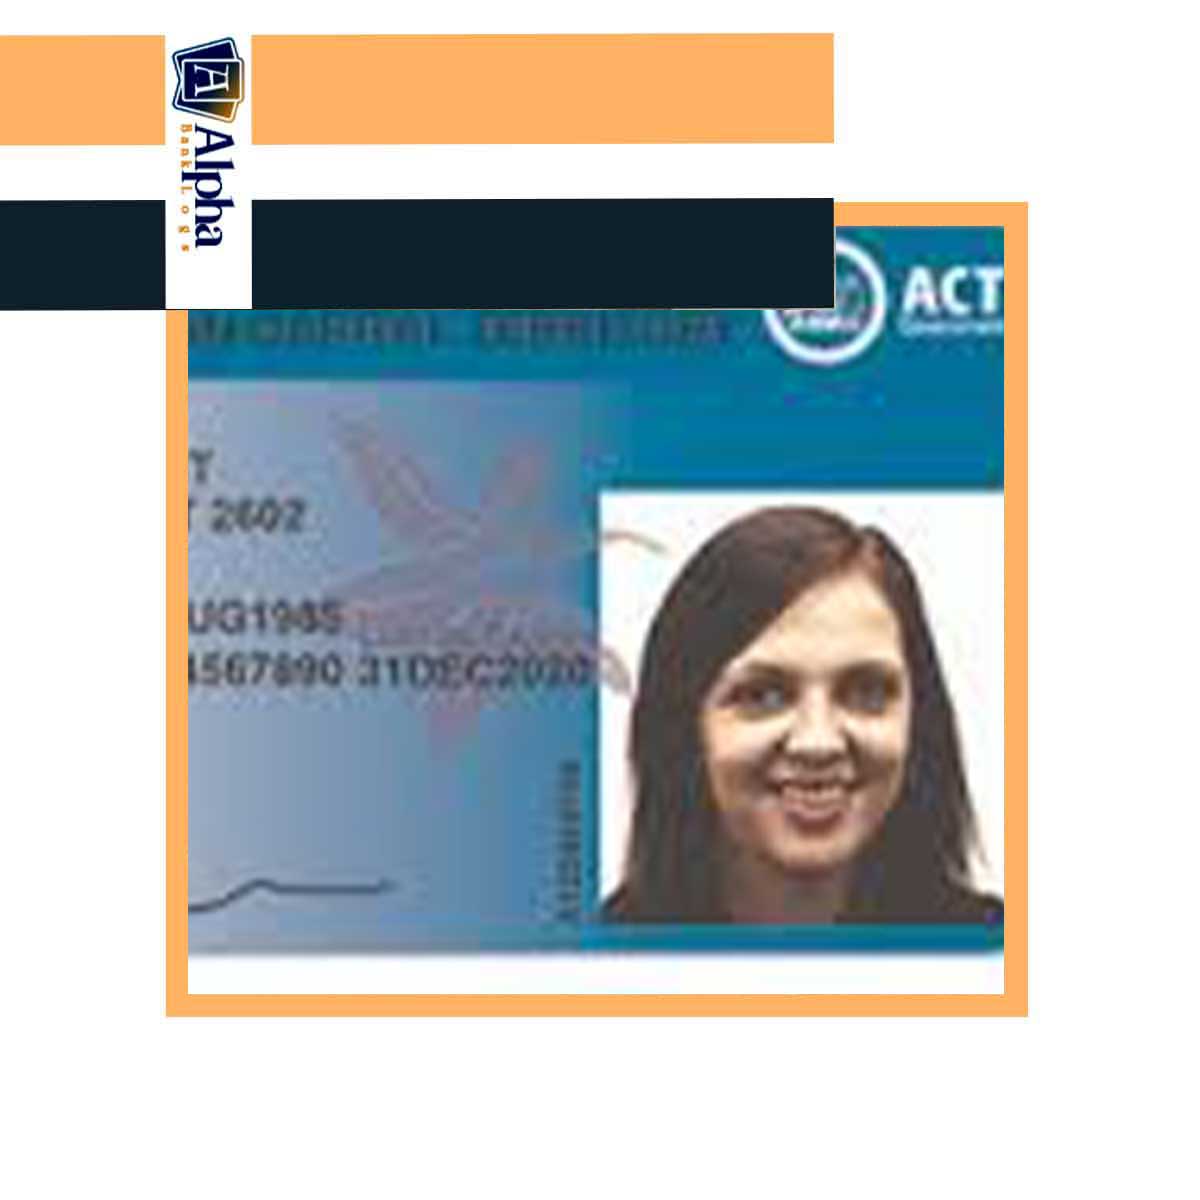 Australian Fullz Employee Complete Identity